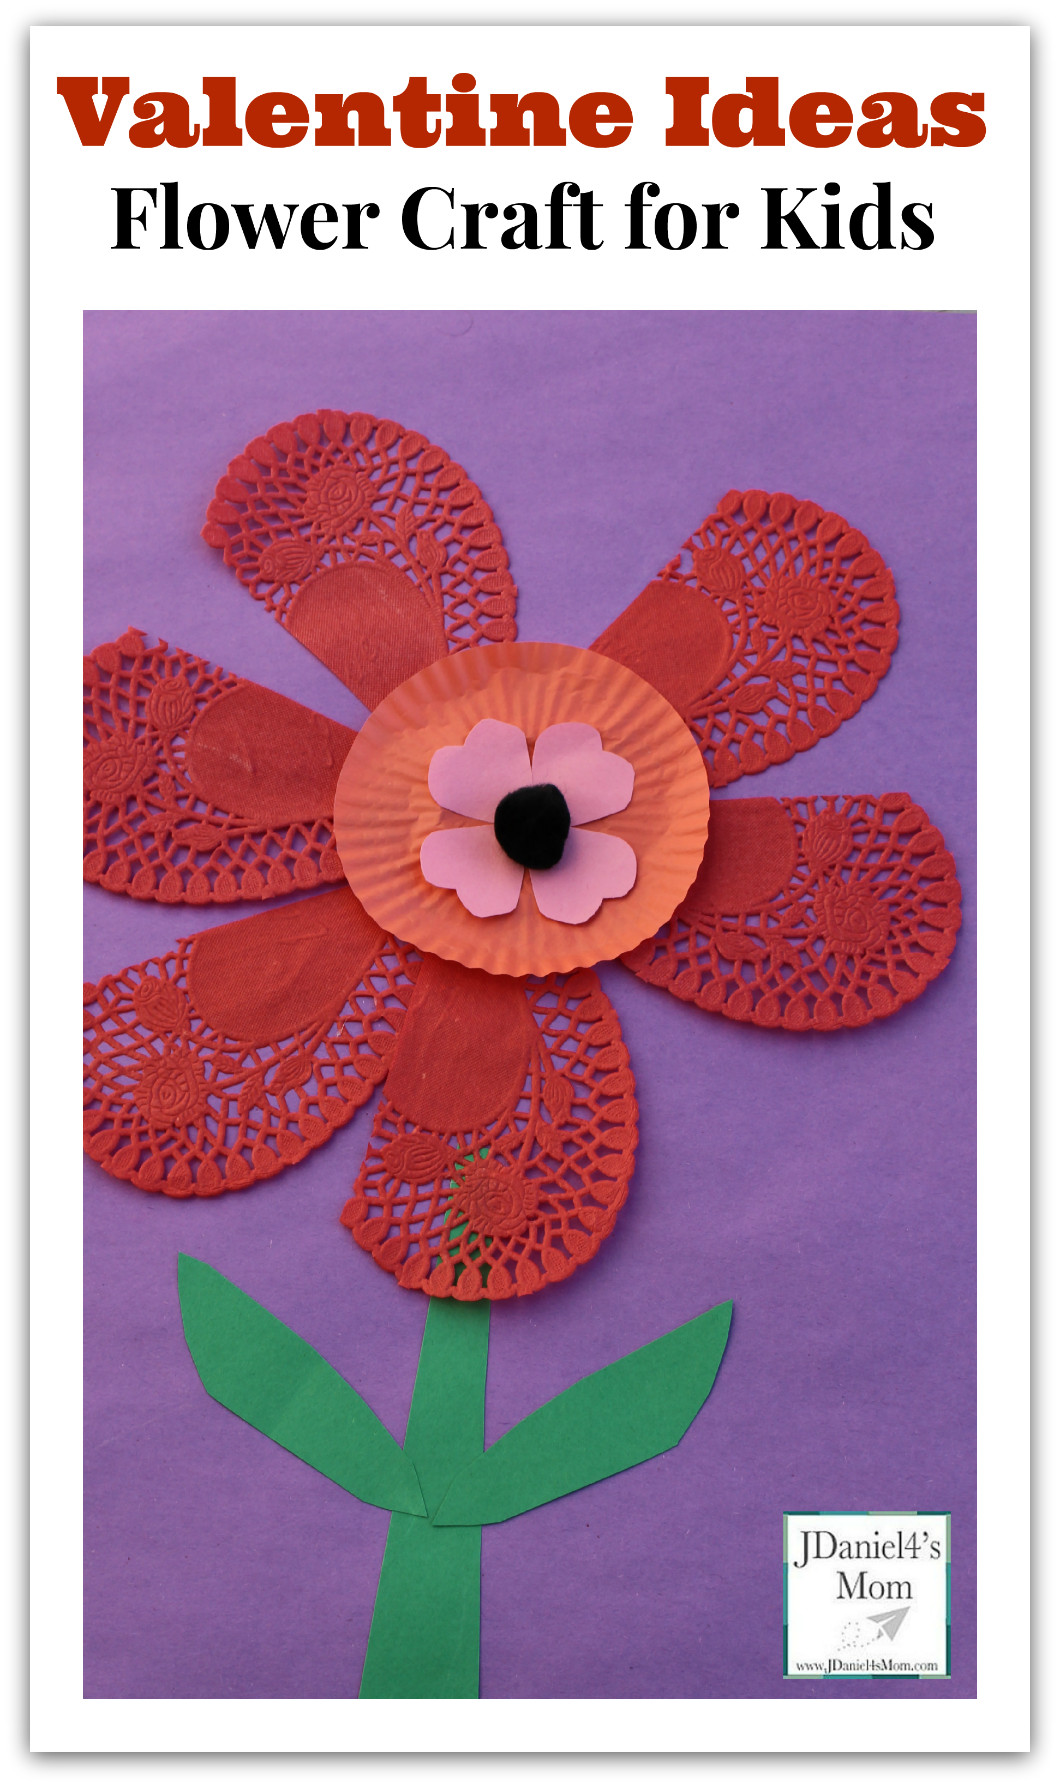 Valentines Kids Craft Ideas
 Valentine Ideas Flower Craft for Kids